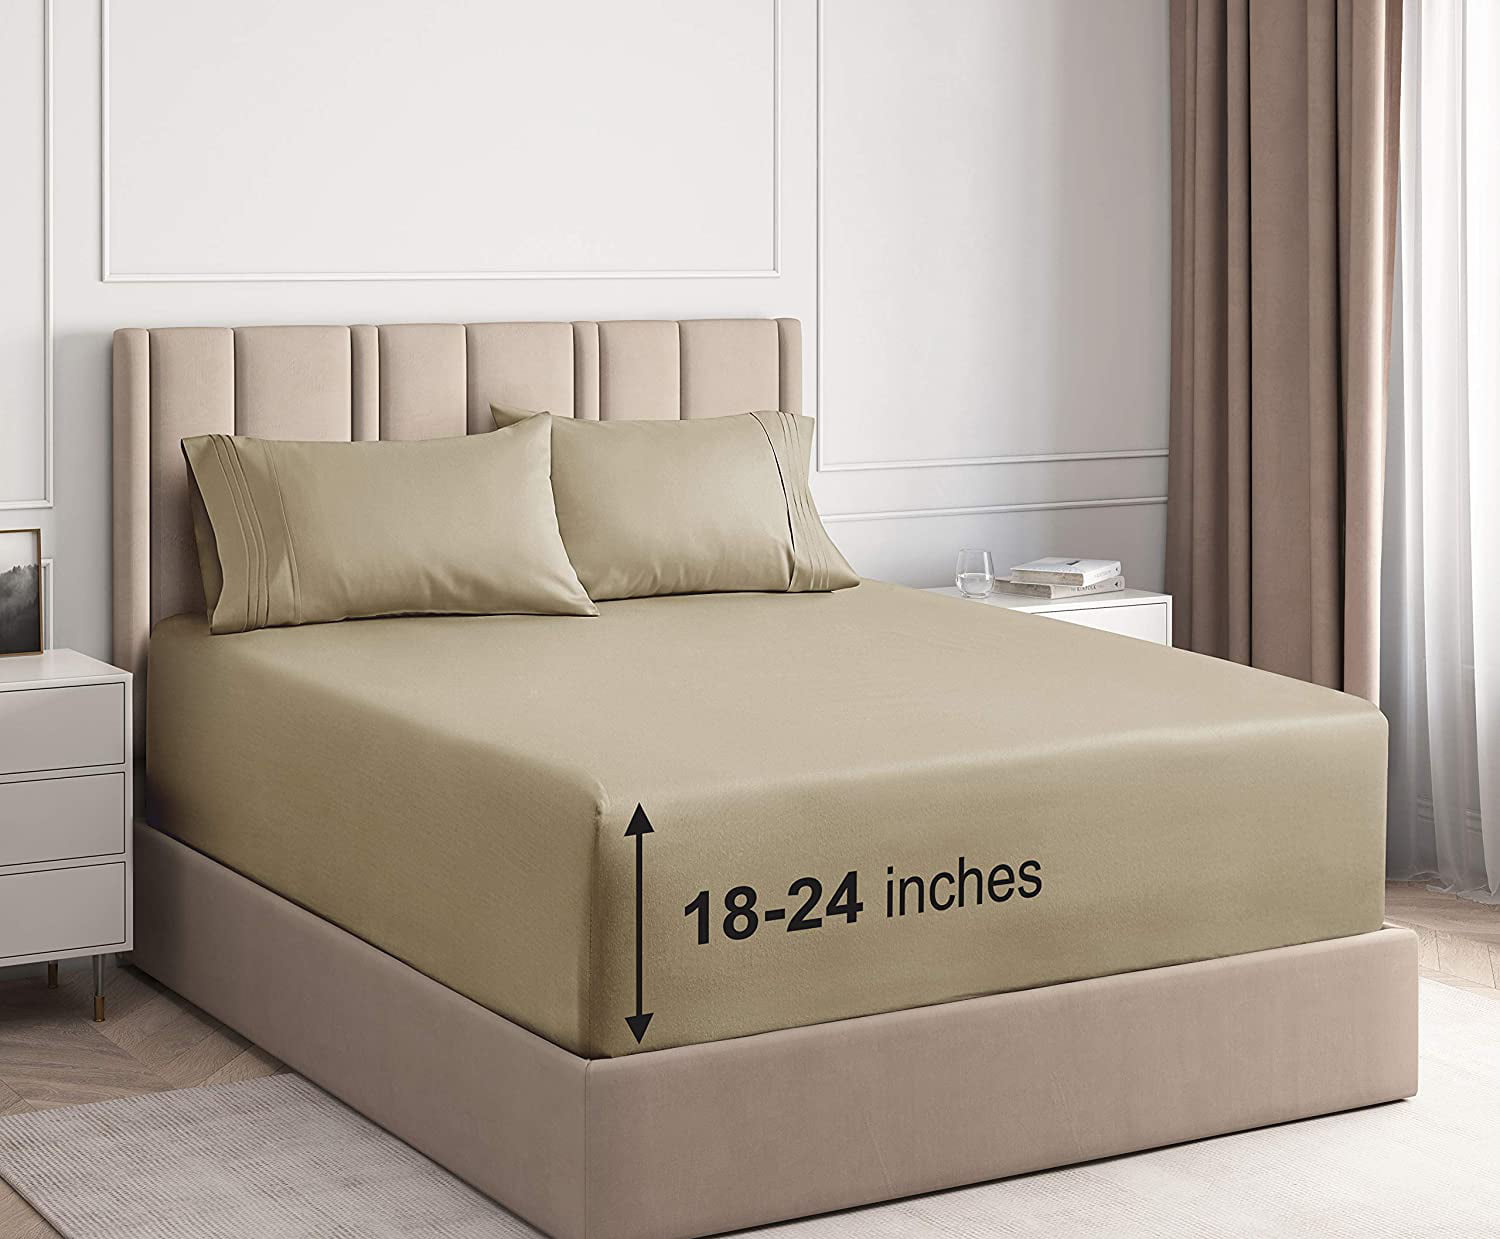 queen size fitted sheet for deep mattress